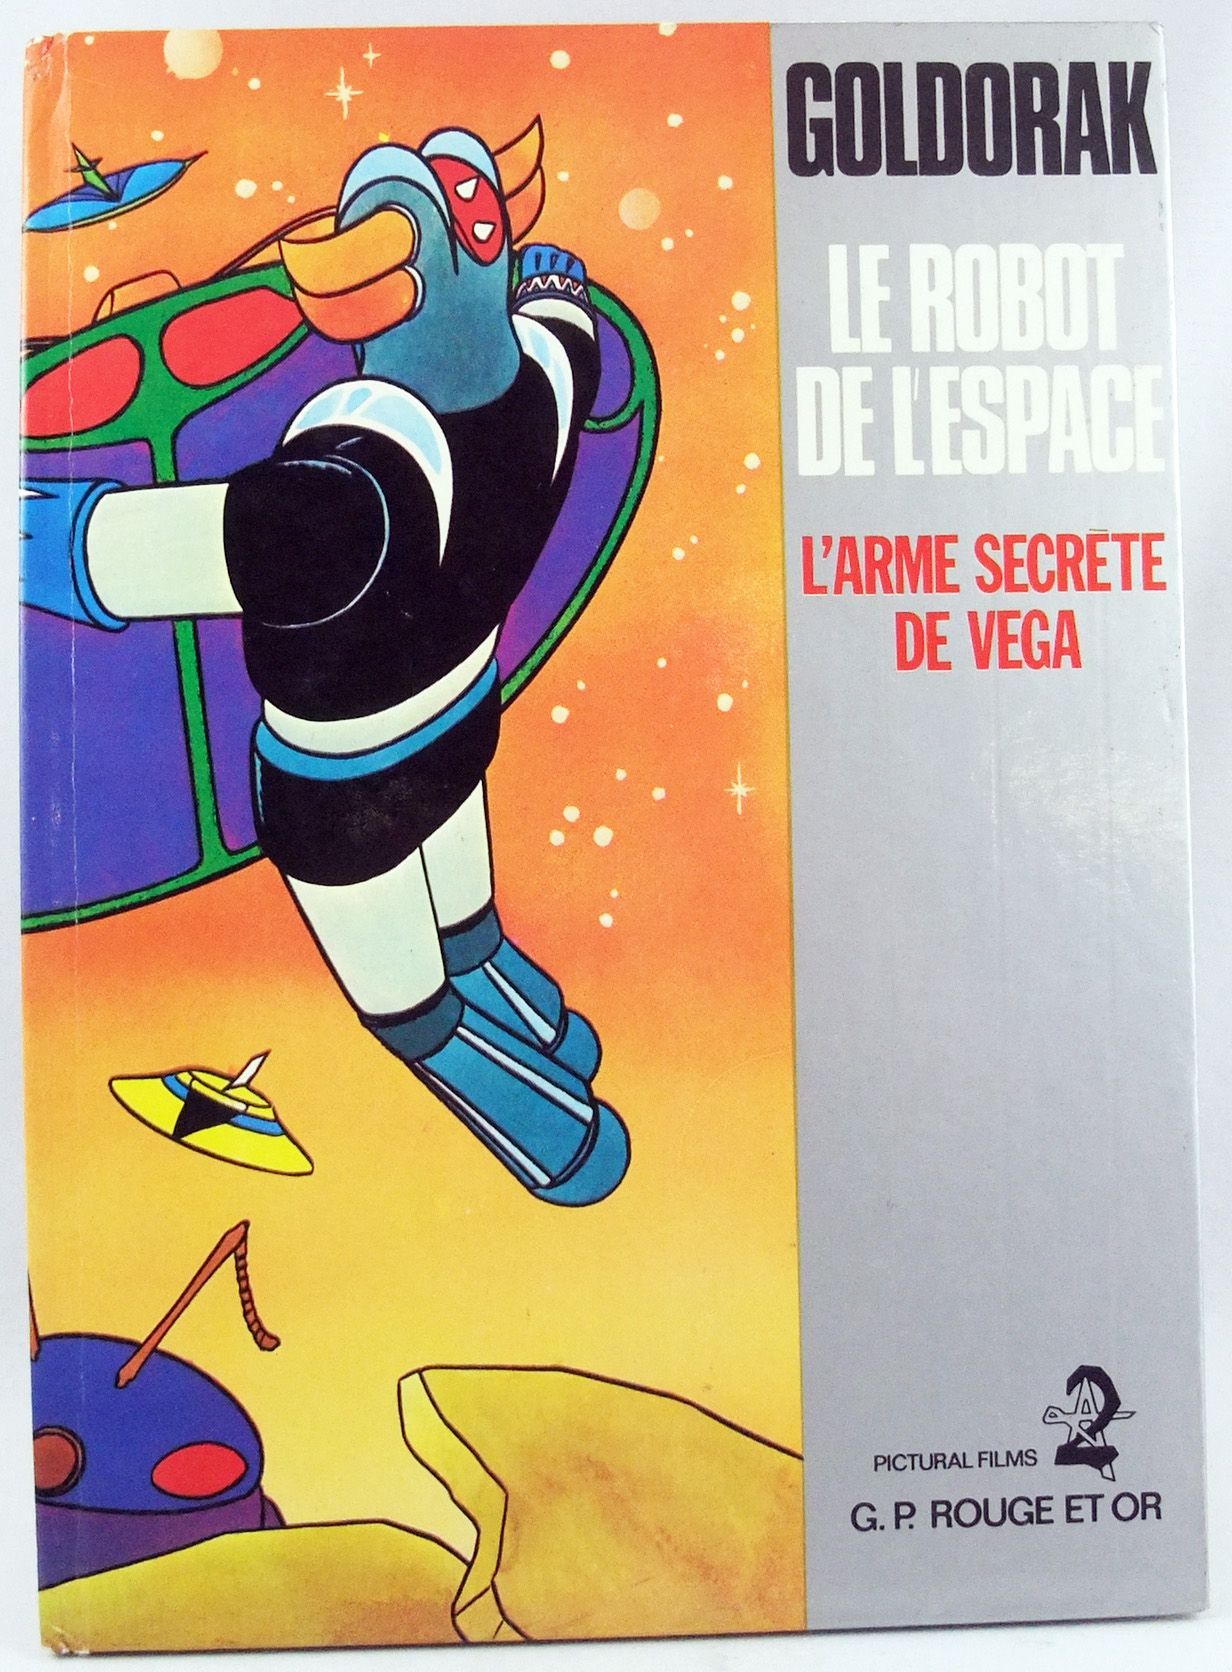 Goldorak - Edition G. P. Rouge et Or A2 - Goldorak le Robot de l'Espace :  L'arme secrète